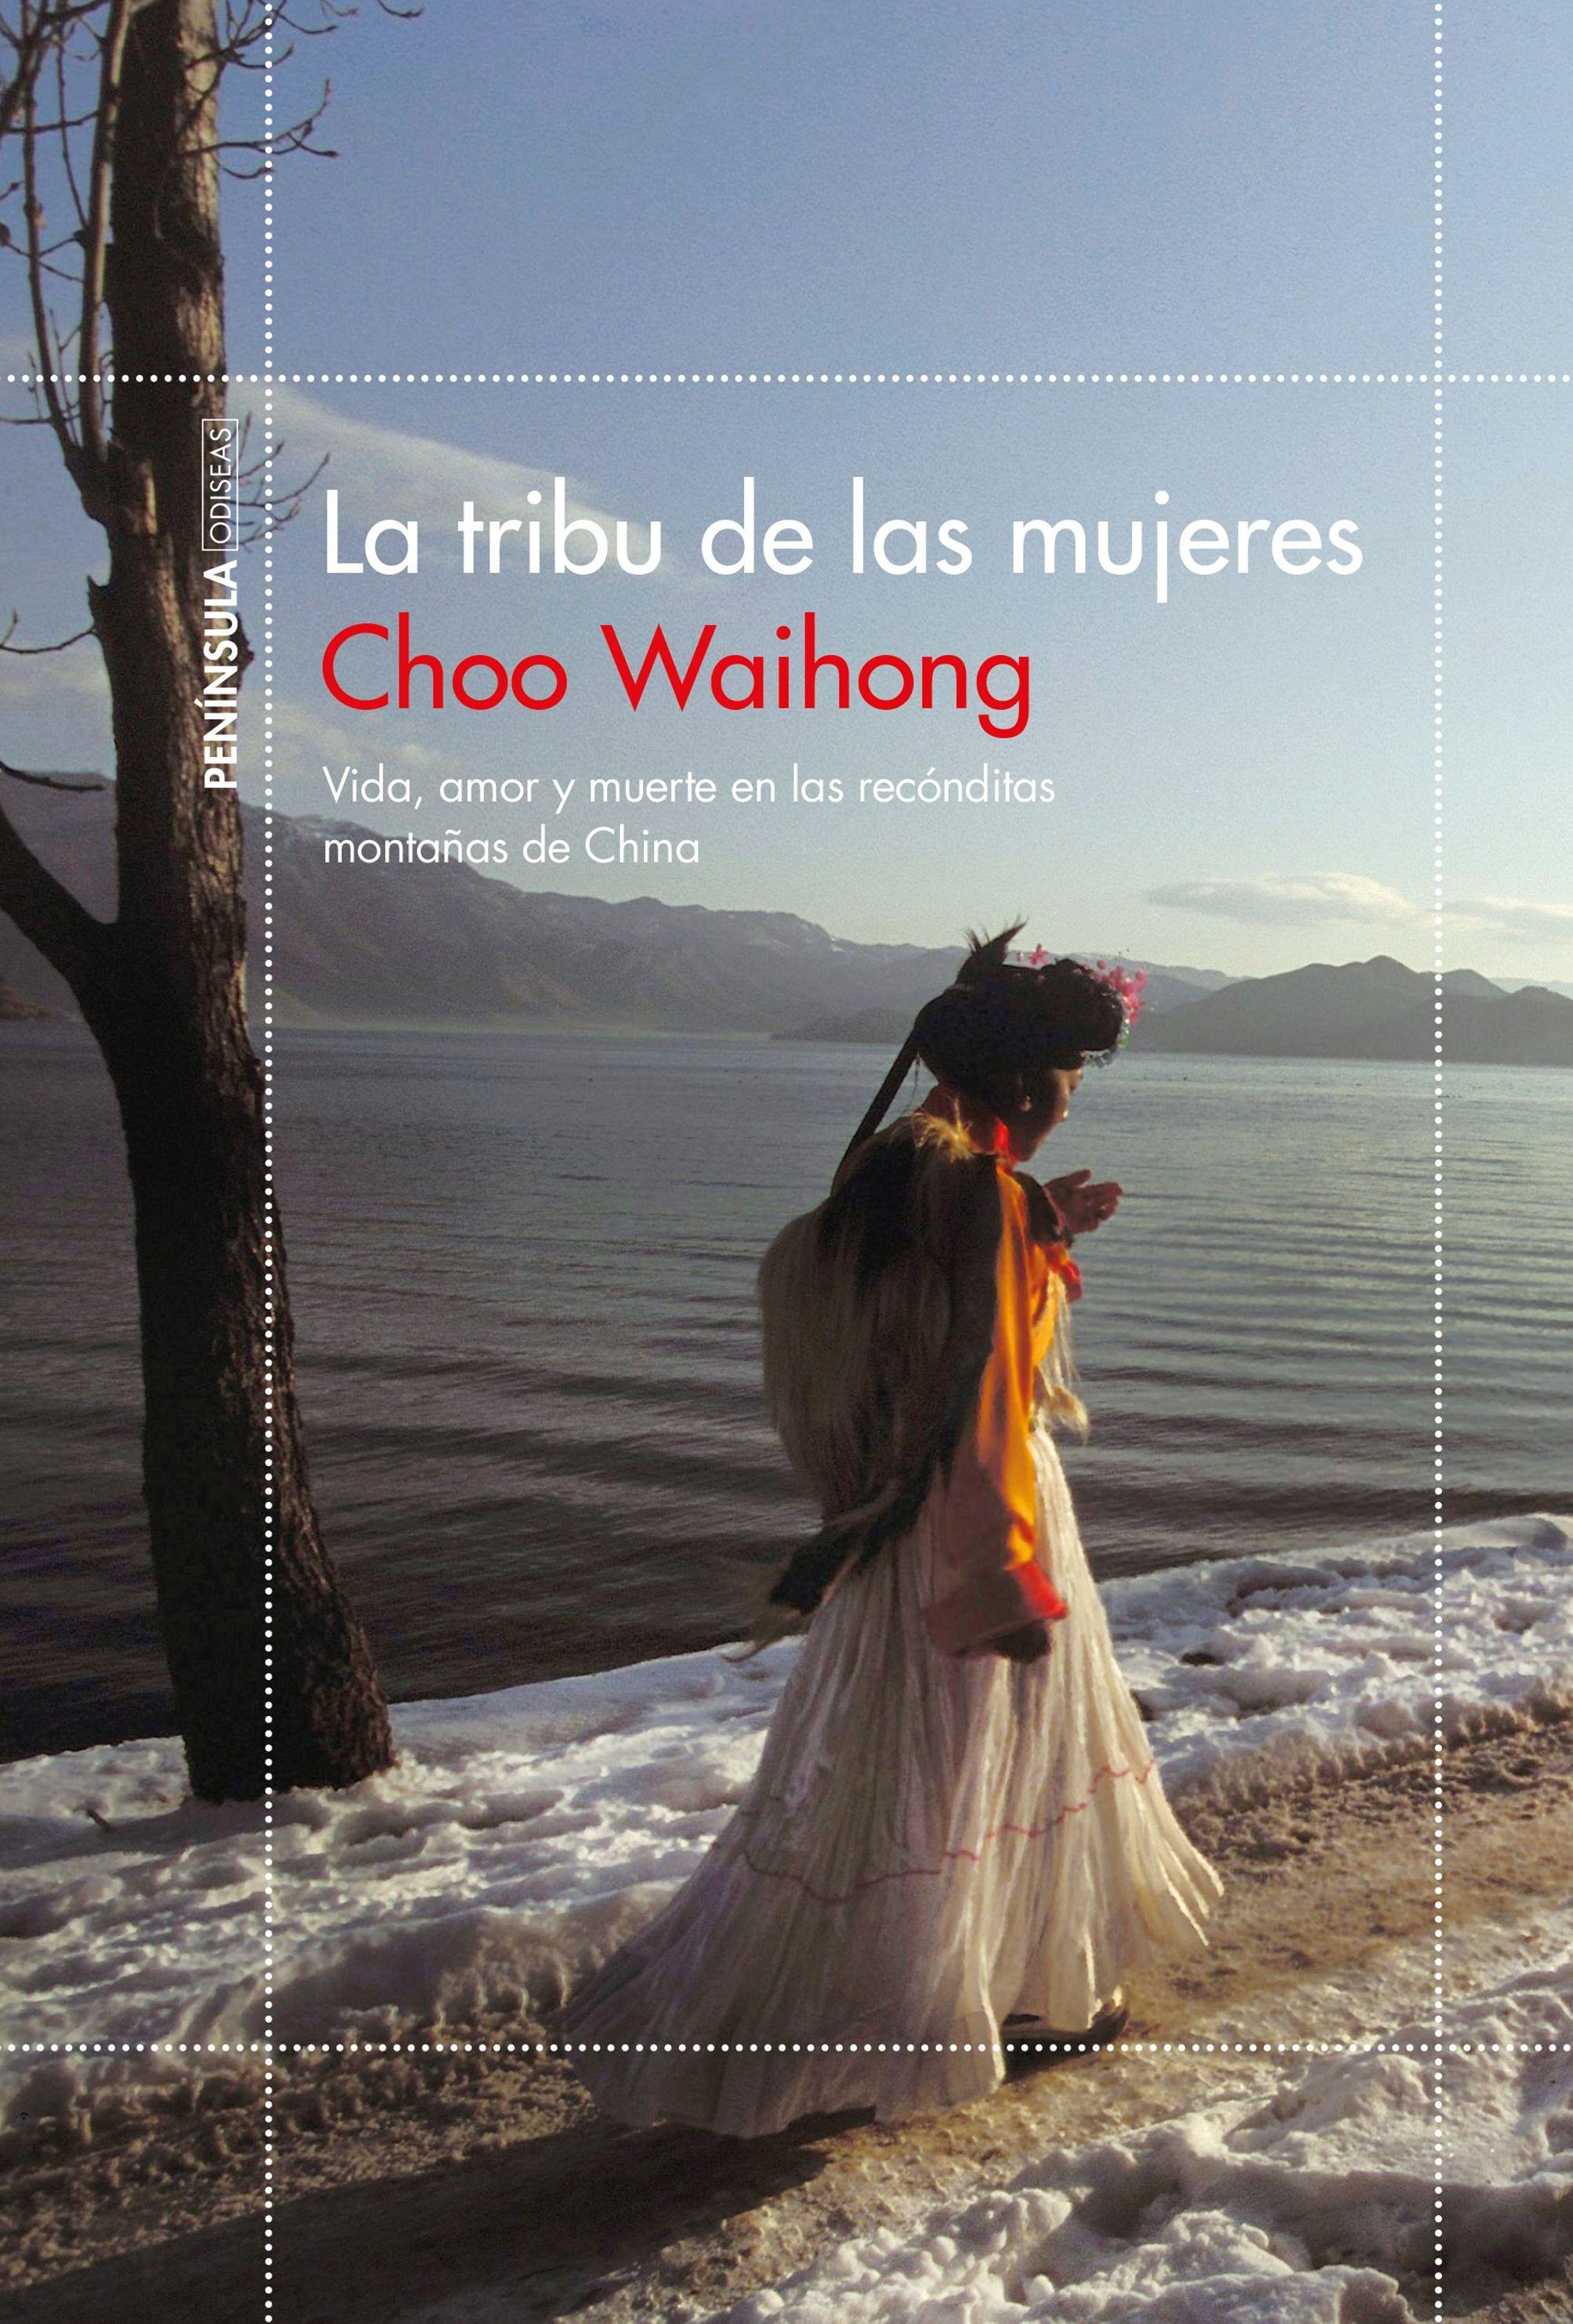 La Tribu de las Mujeres "Vida, Amor y Muerte en las Recónditas Montañas de China". 